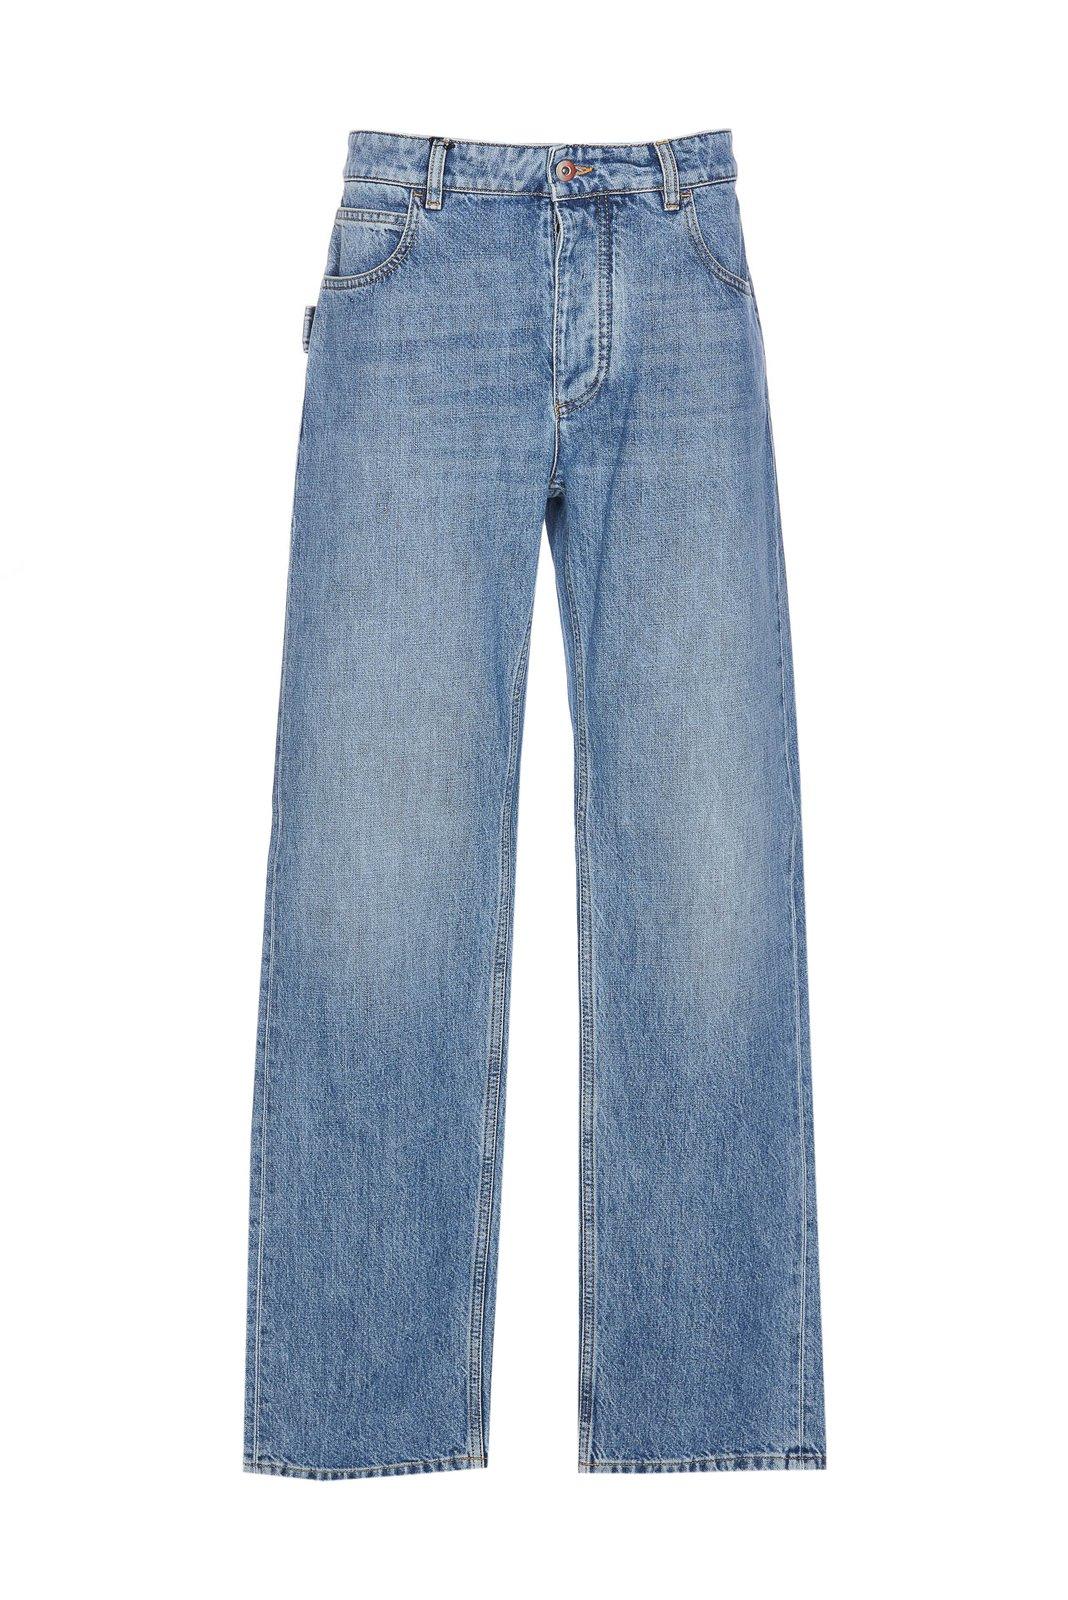 Vintage Washed Boyfriend Denim Jeans